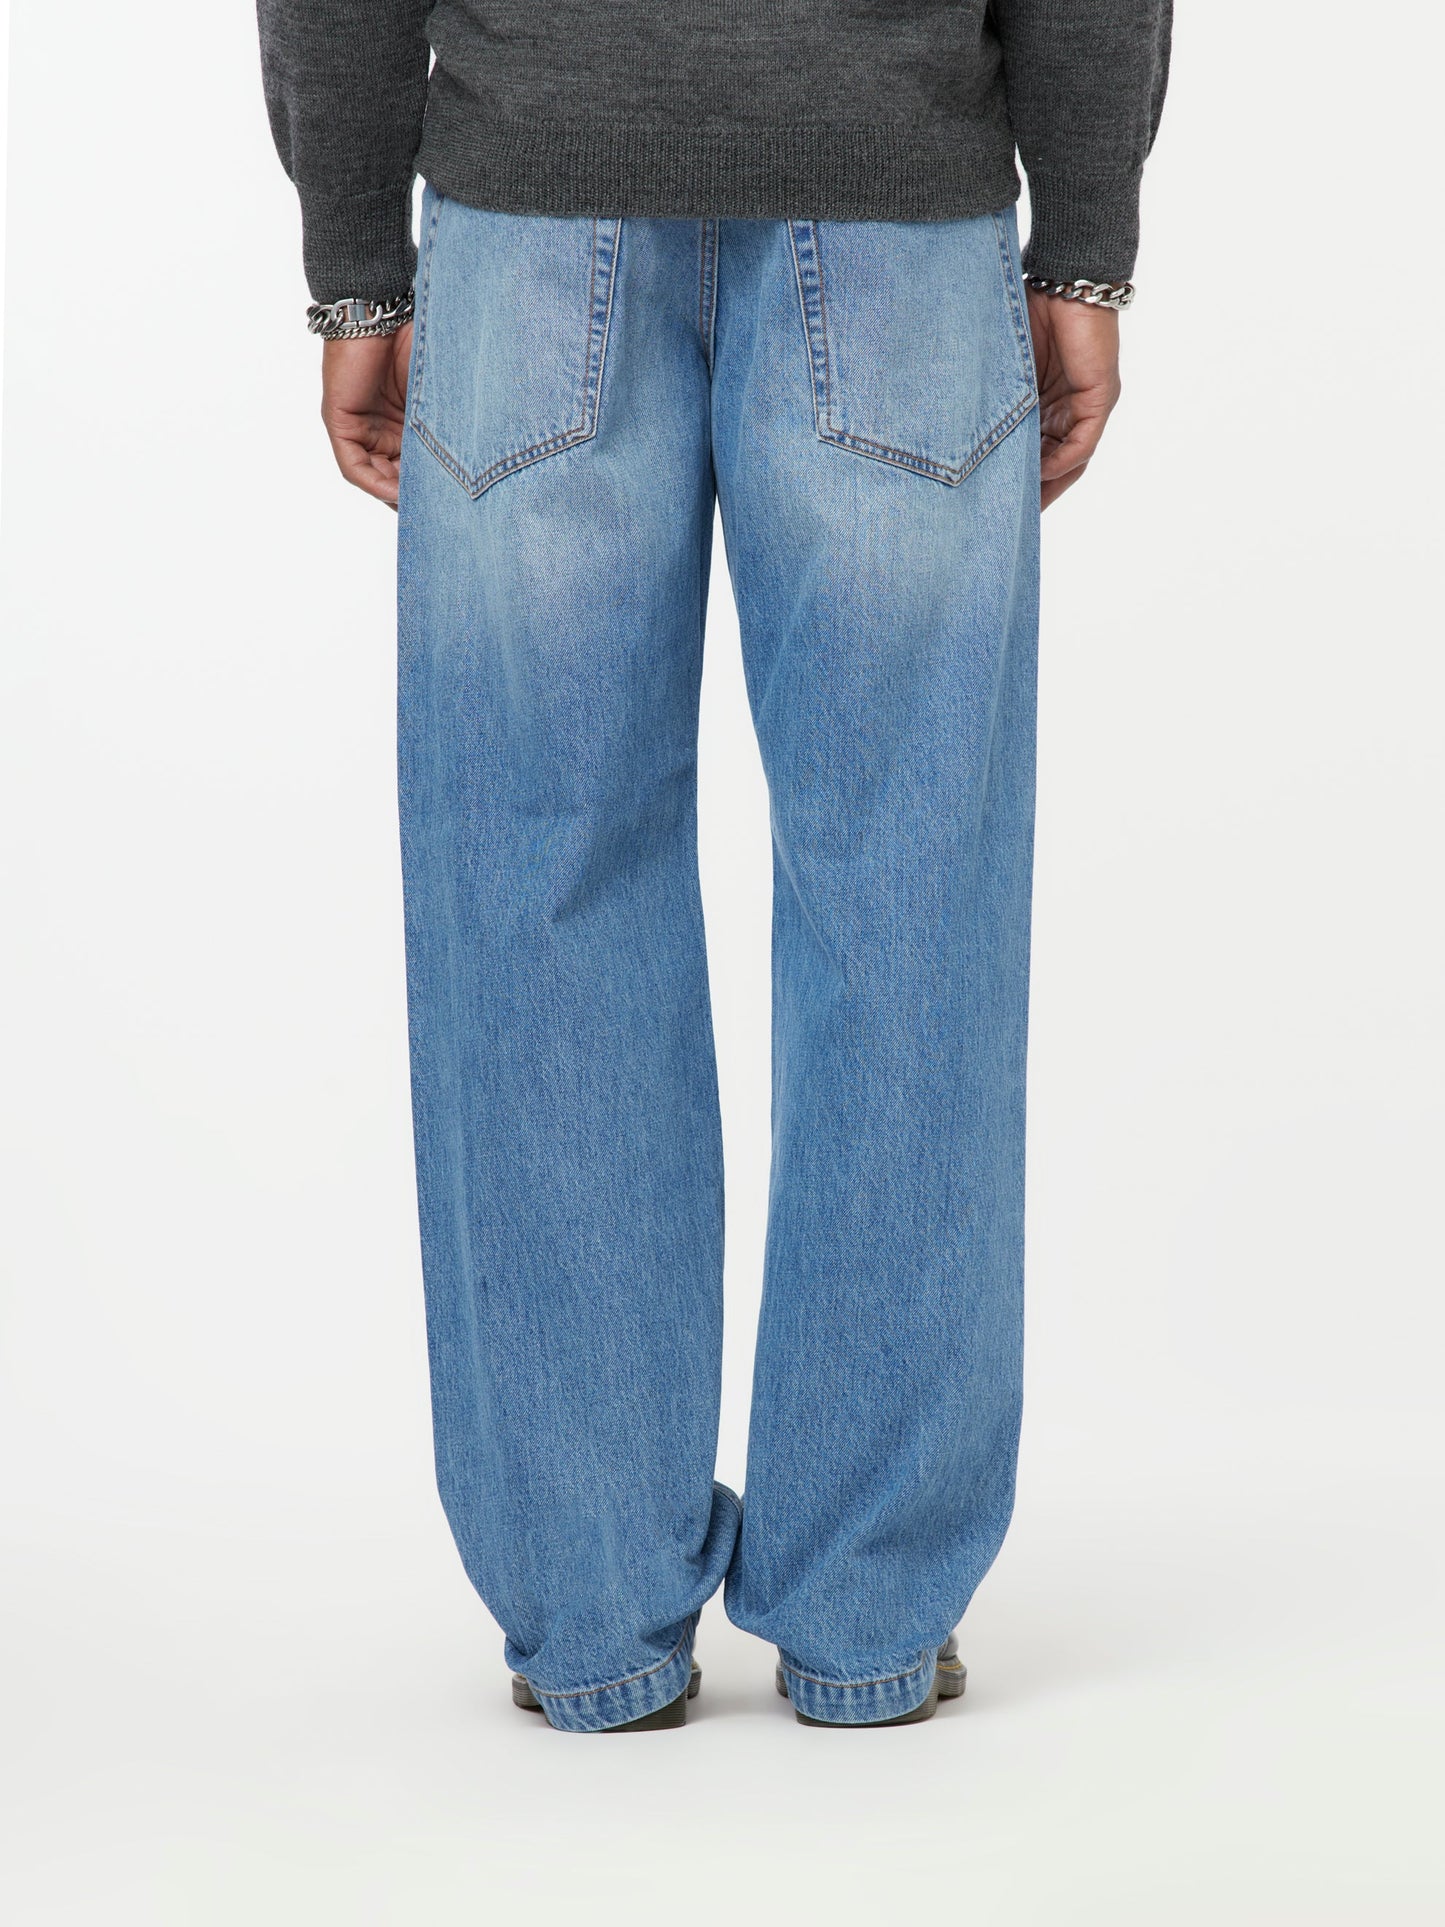 Shift Denim Jeans (Med. Wash)